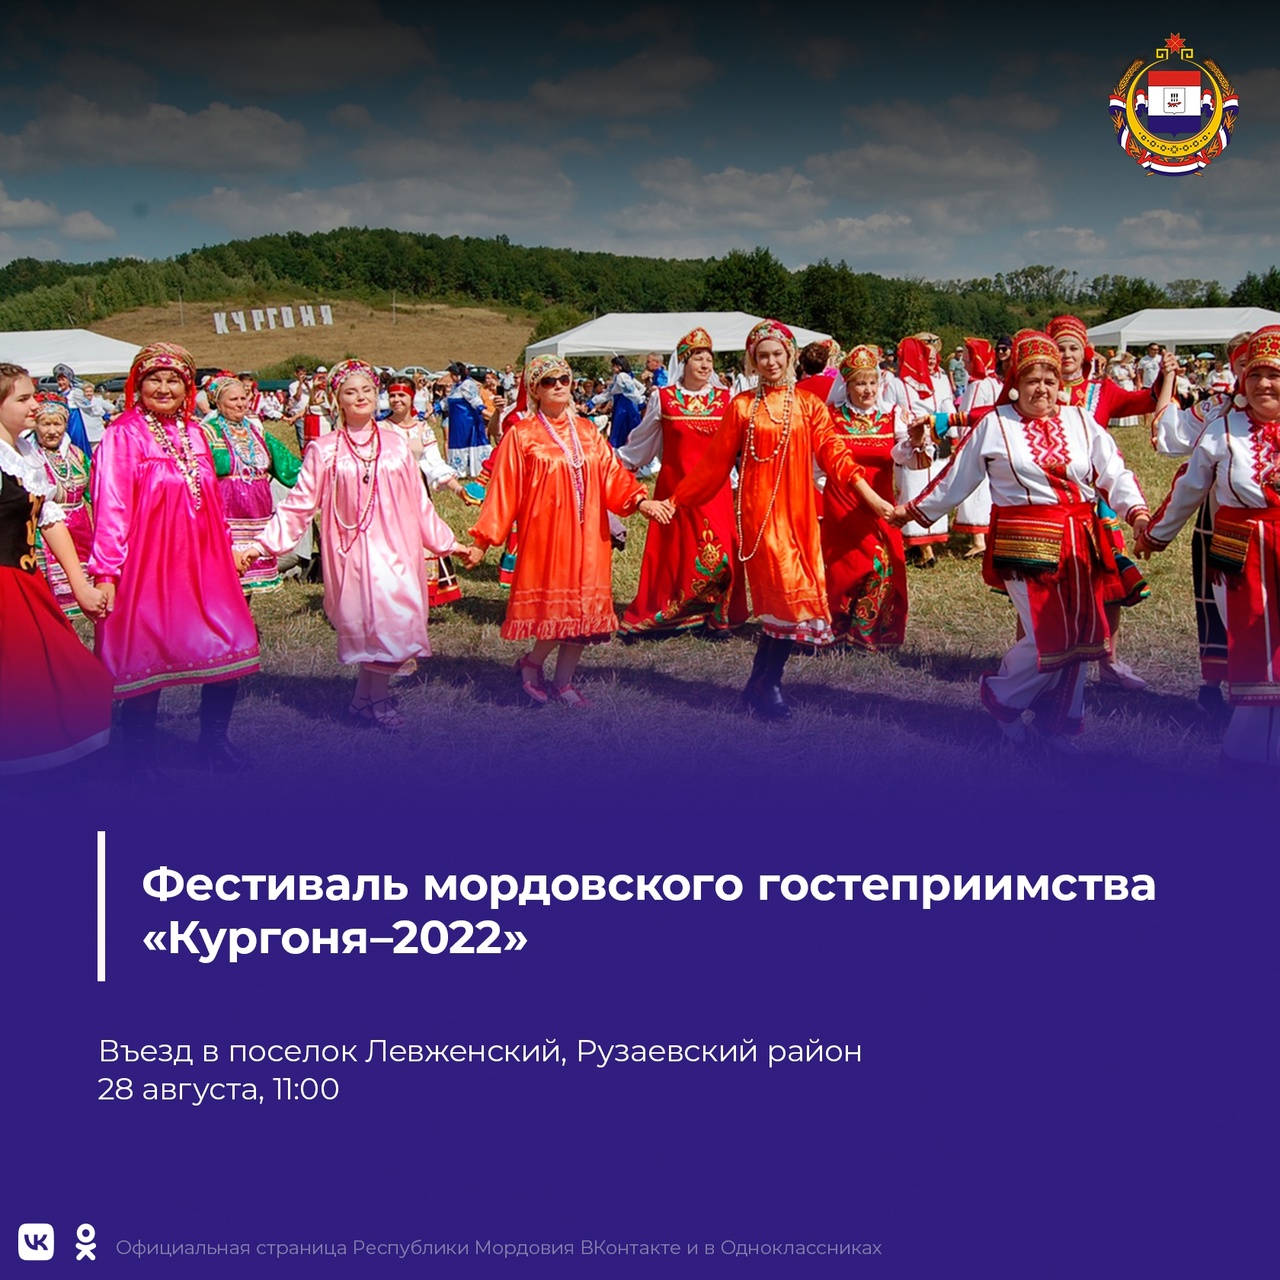 Фестиваль мордовского гостеприимства «Кургоня-2022» пройдёт в Рузаевском районе!